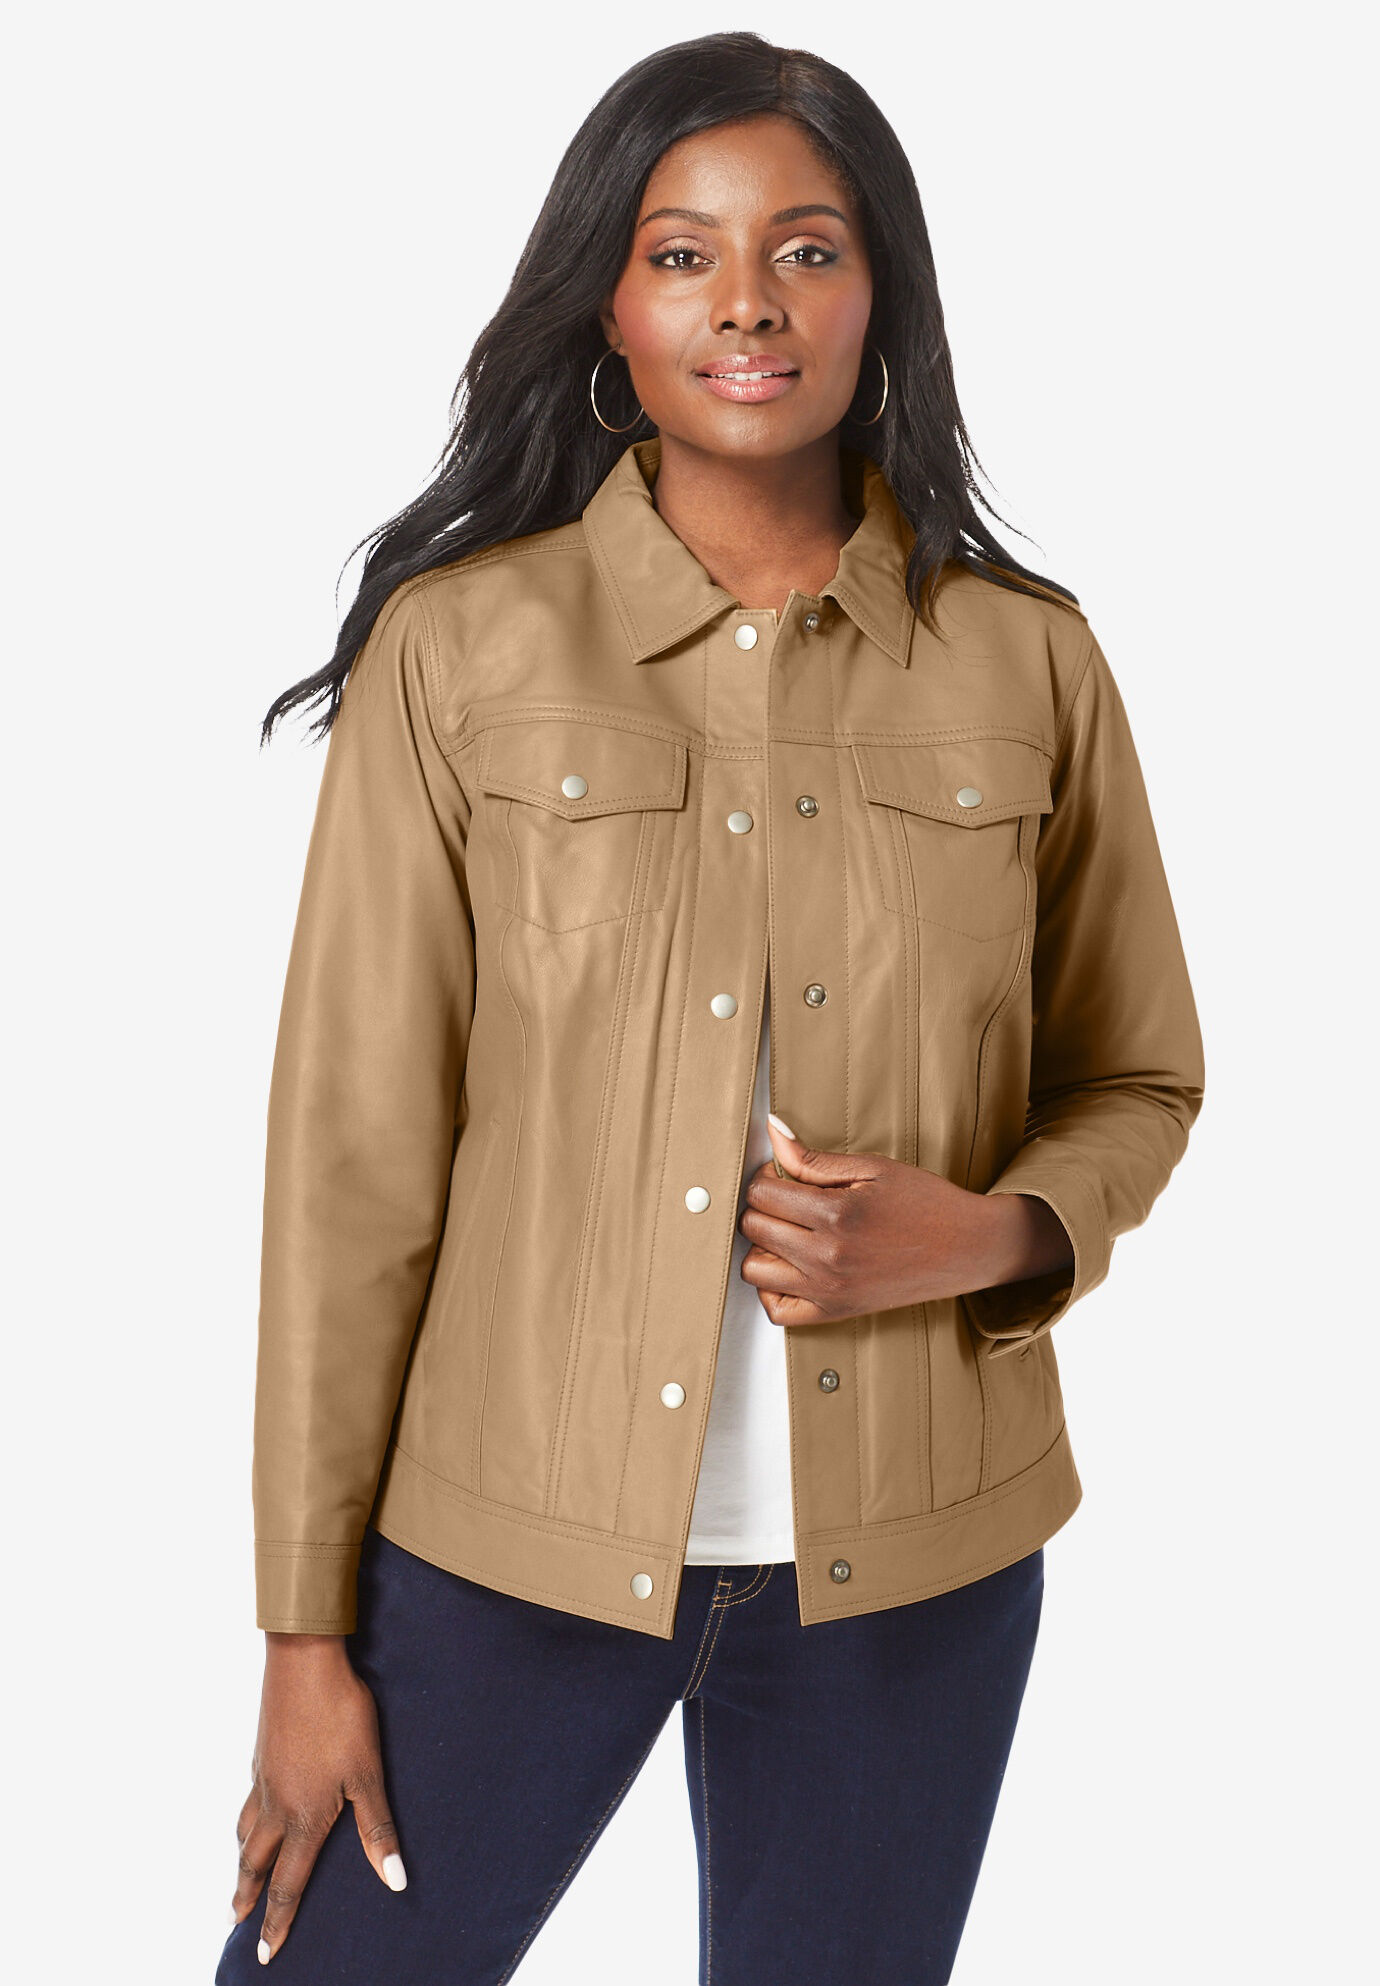 Jessica London Women's Plus Size Classic Cotton Denim Jacket 100% Cotton Jean Jacket 